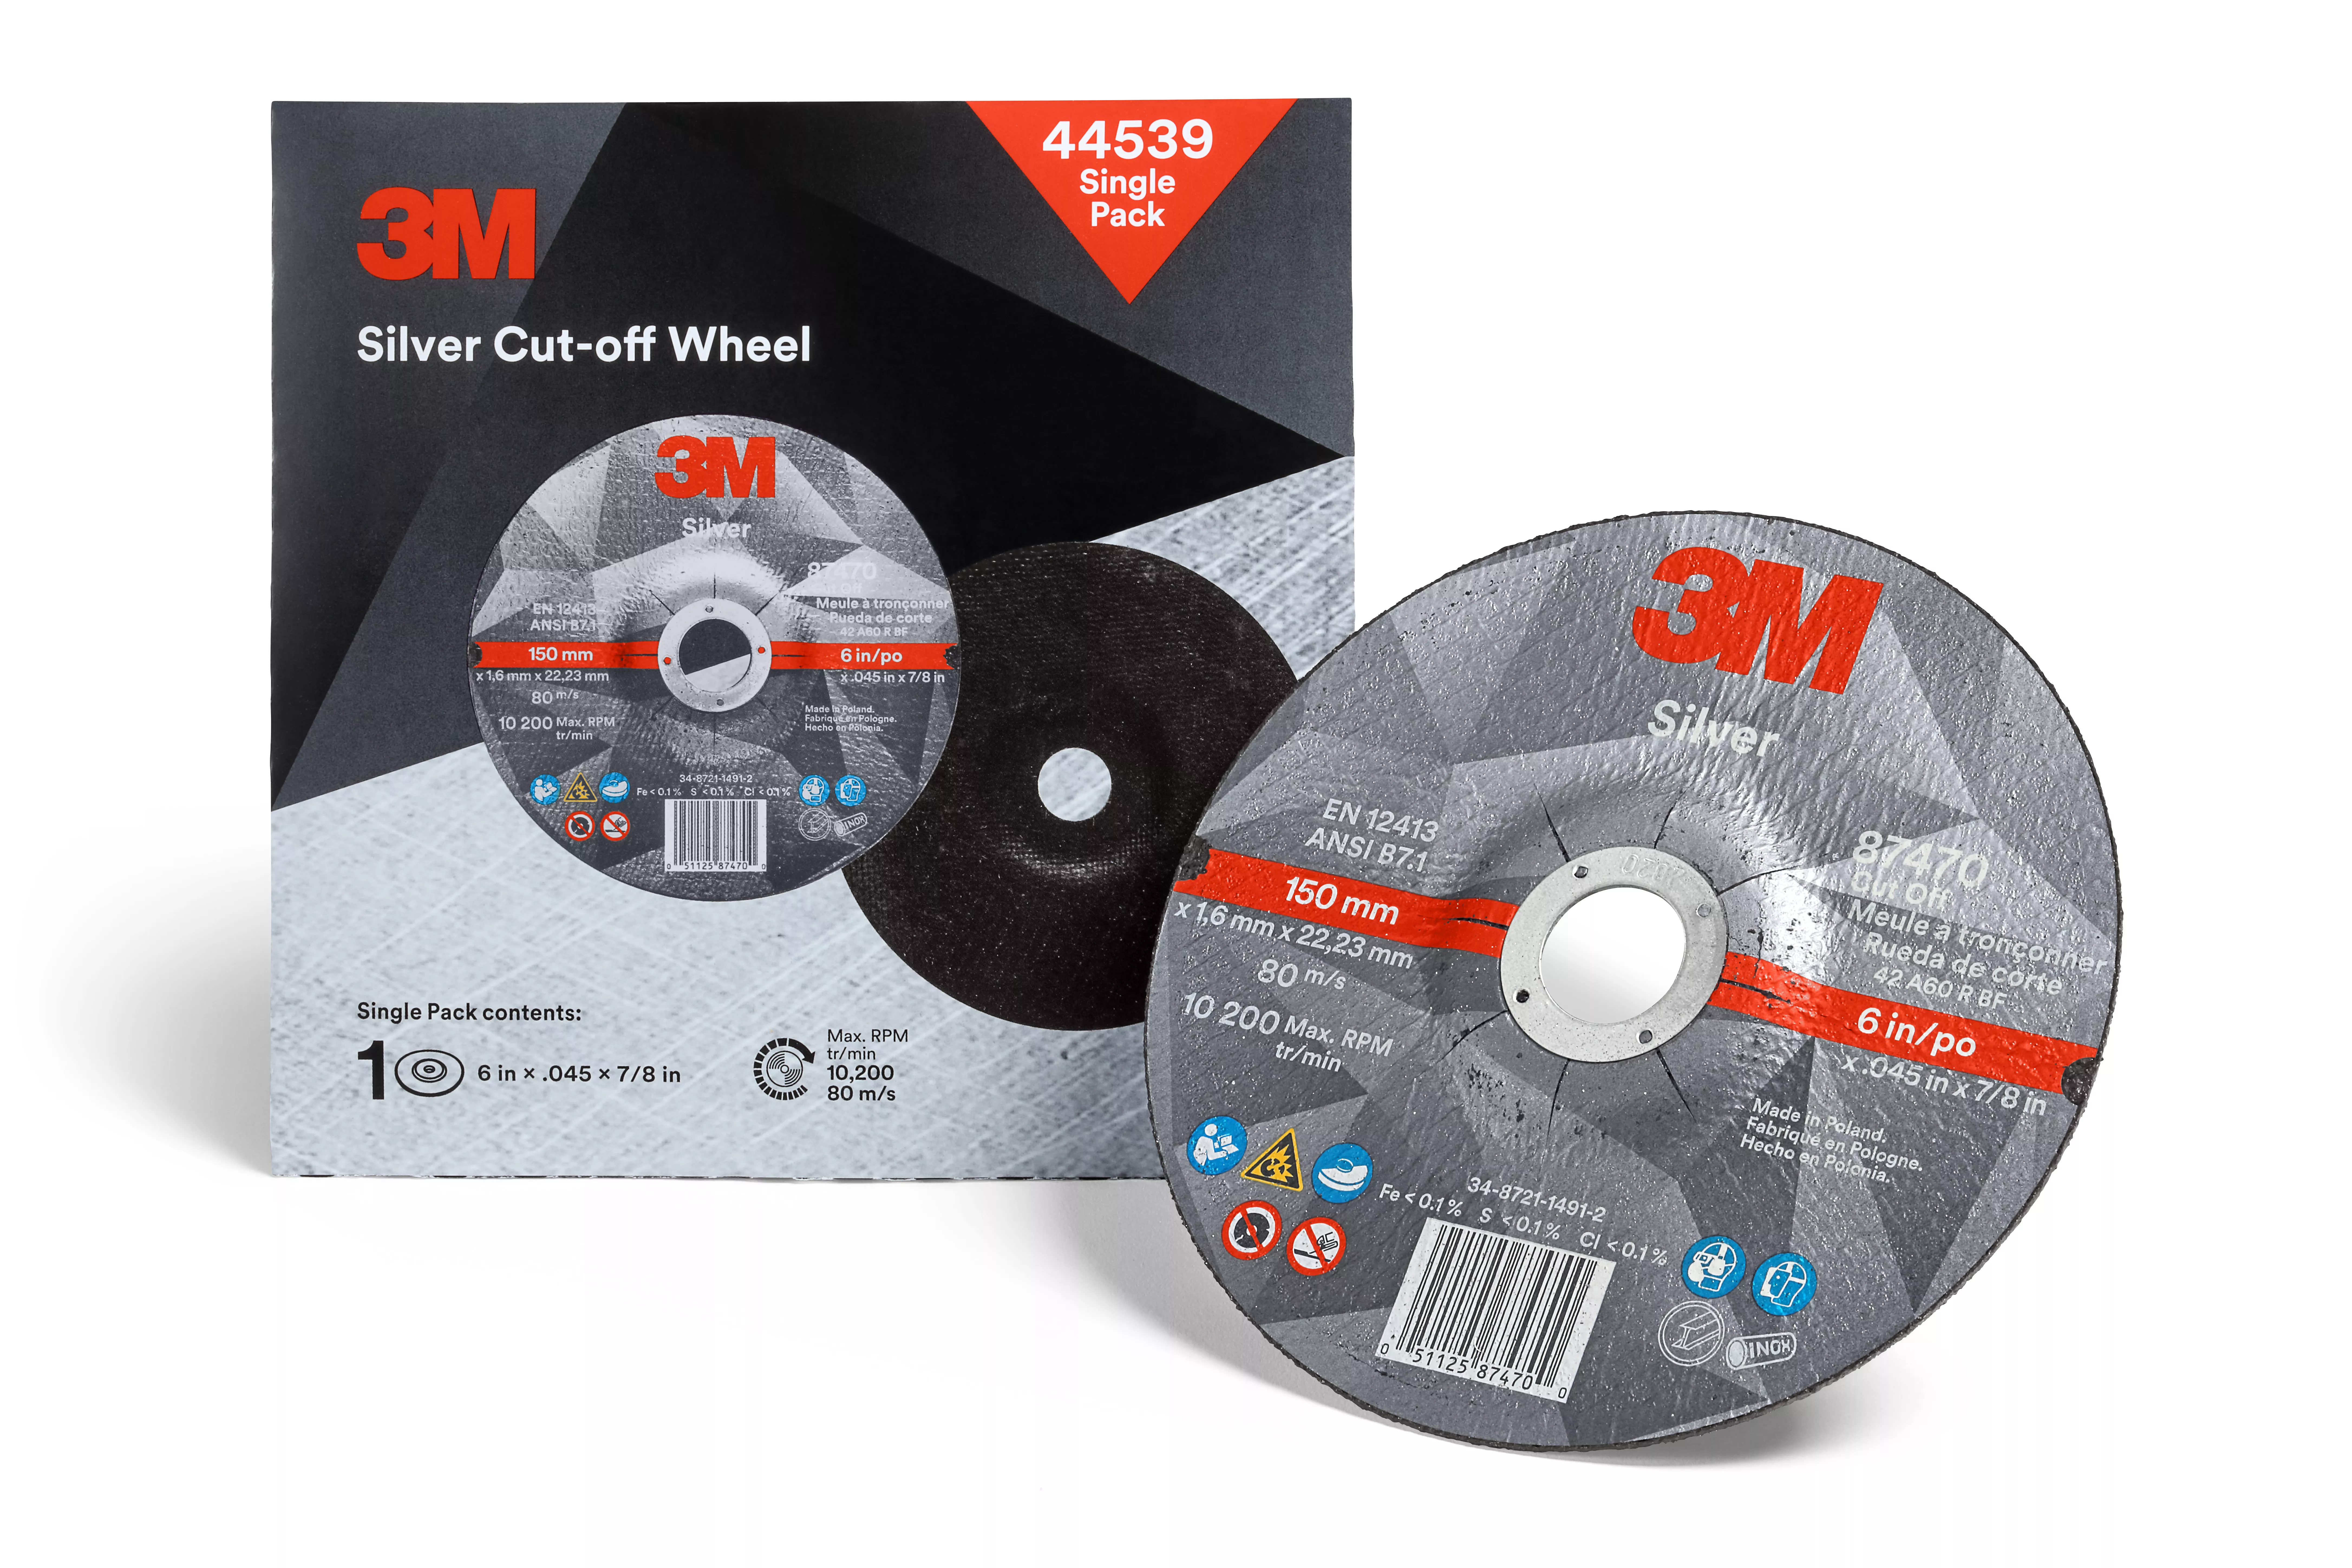 3M™ Silver Cut-Off Wheel, 44539, T27, 6 in x .045 in x 7/8 in, Single
Pack, 10 ea/Case